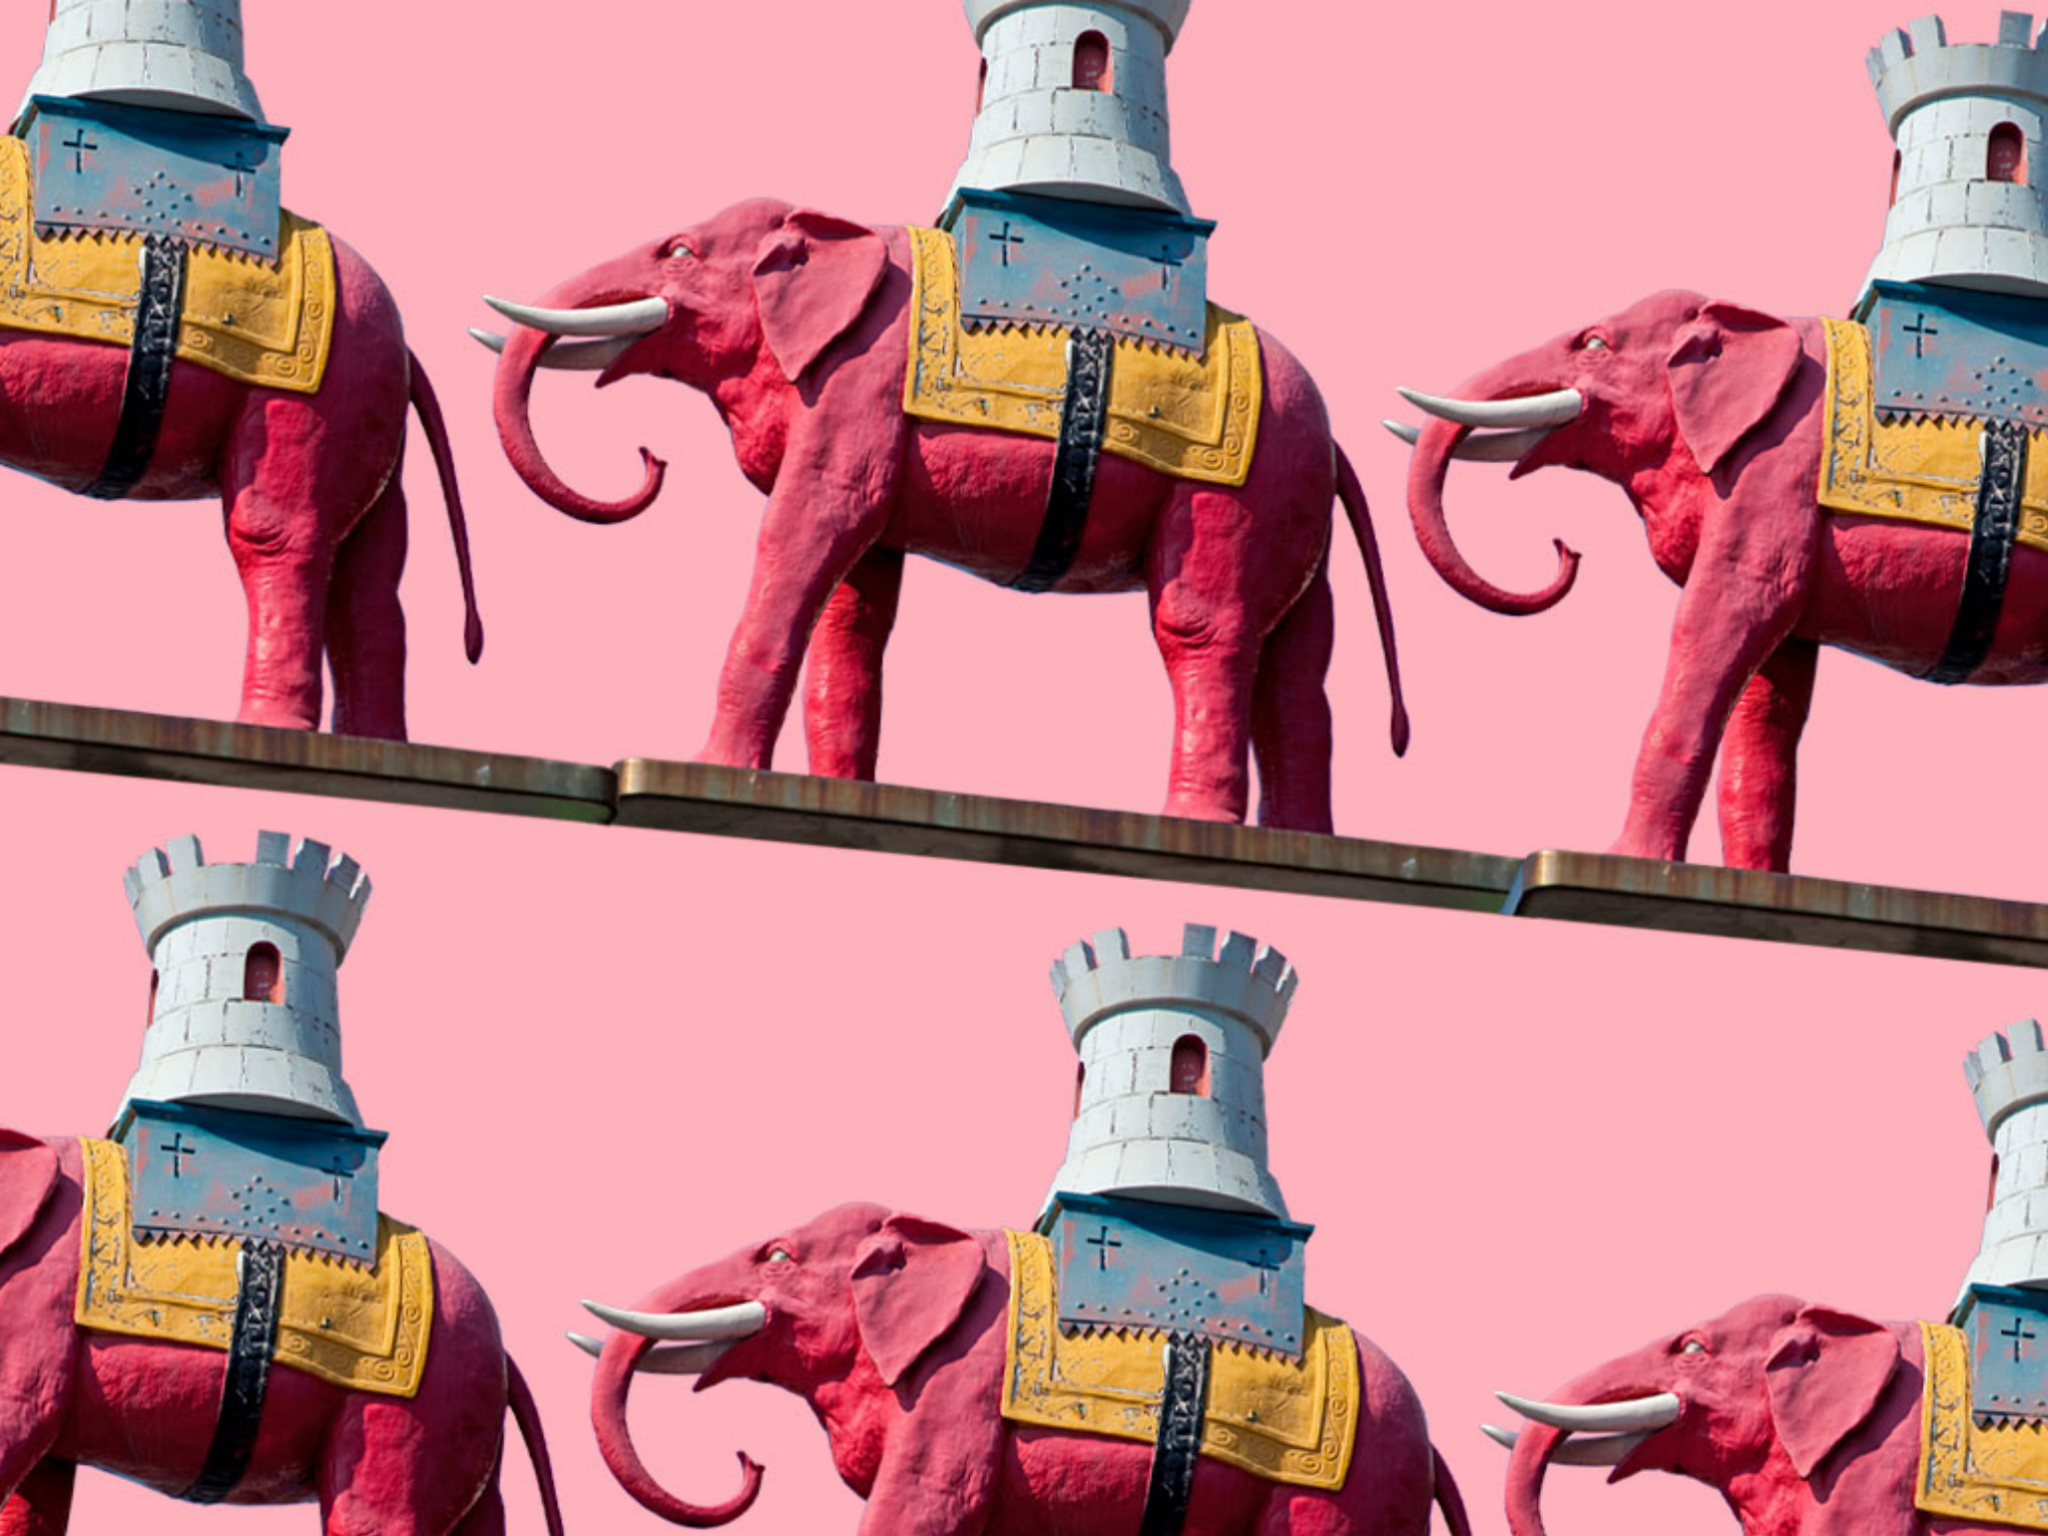 clarks factory shop london elephant castle